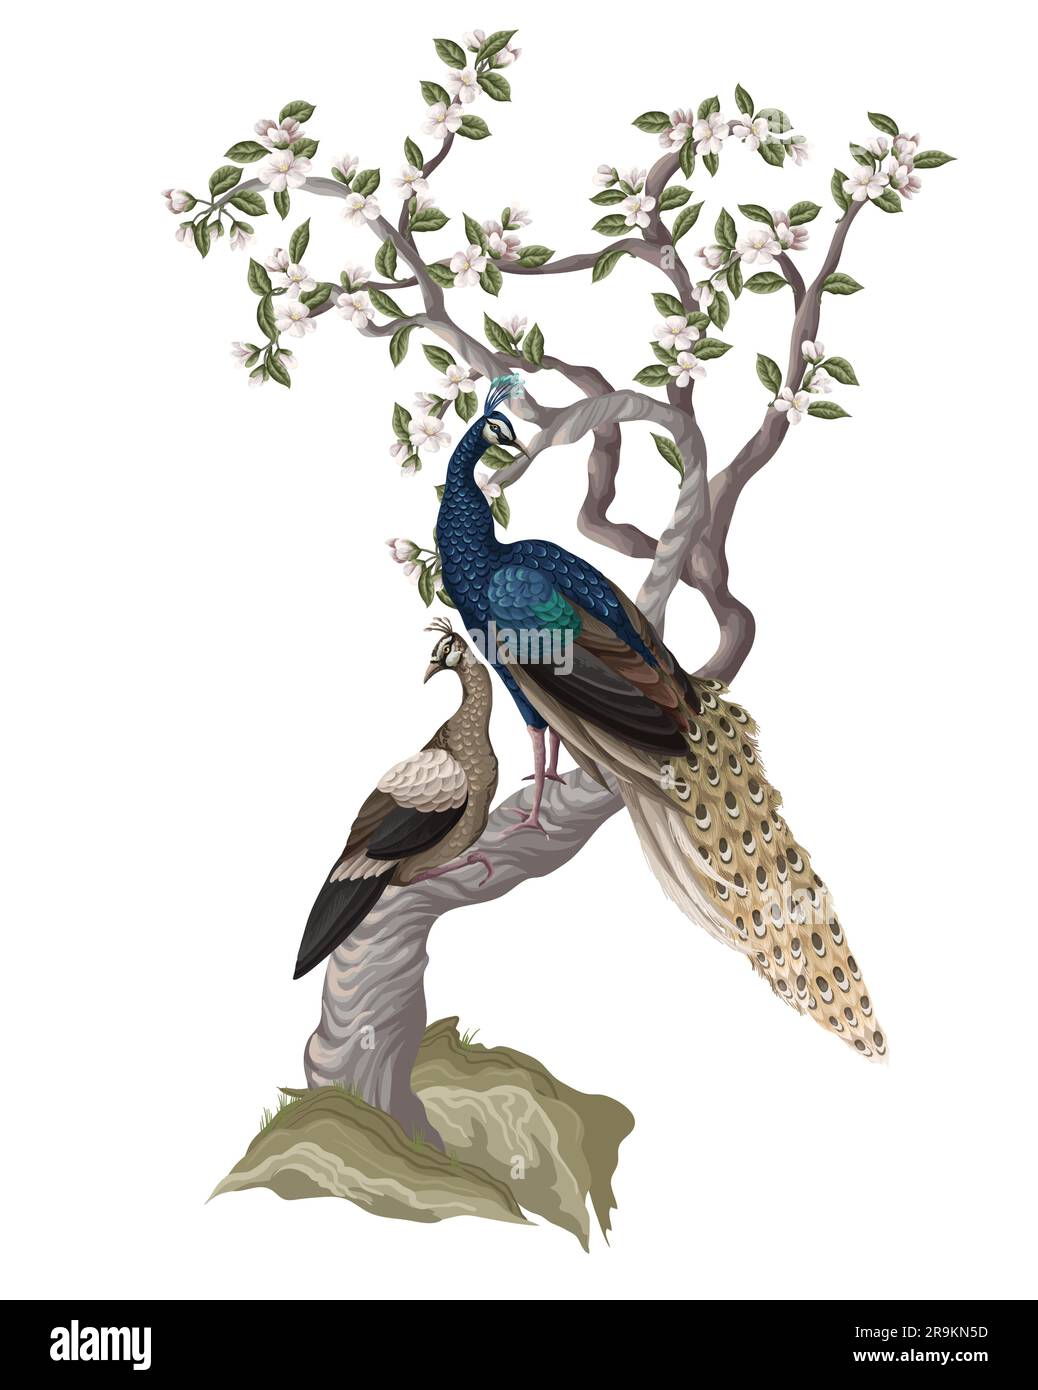 Fresque de Chinoiserie avec paons et fleurs d'arbres. Vecteur. Illustration de Vecteur